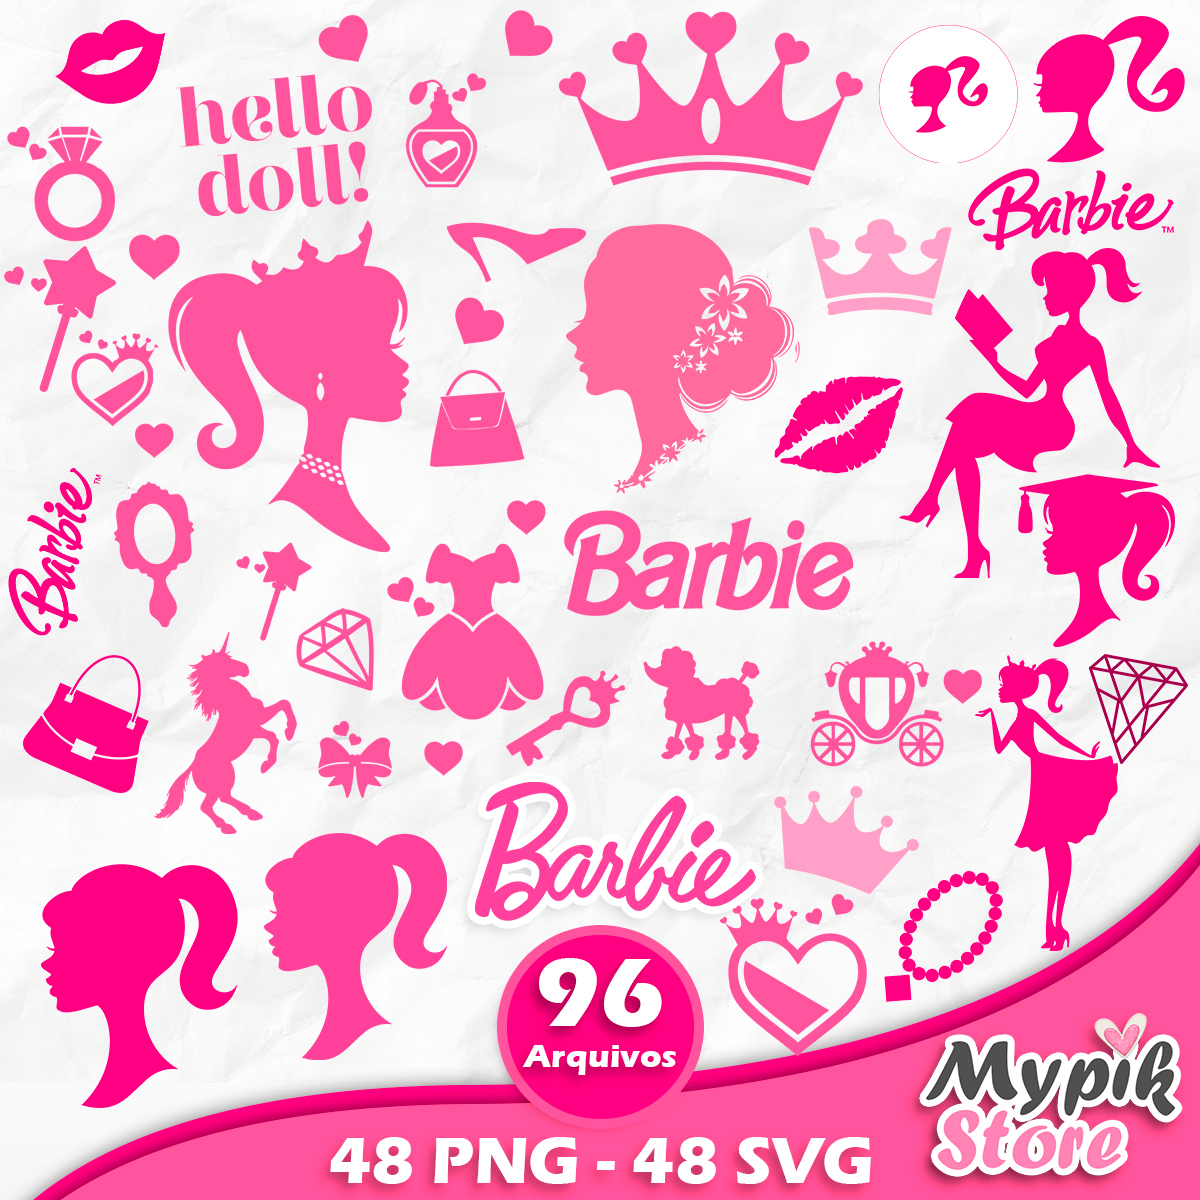 Página 4, Vetores e ilustrações de Jogos barbie para download gratuito